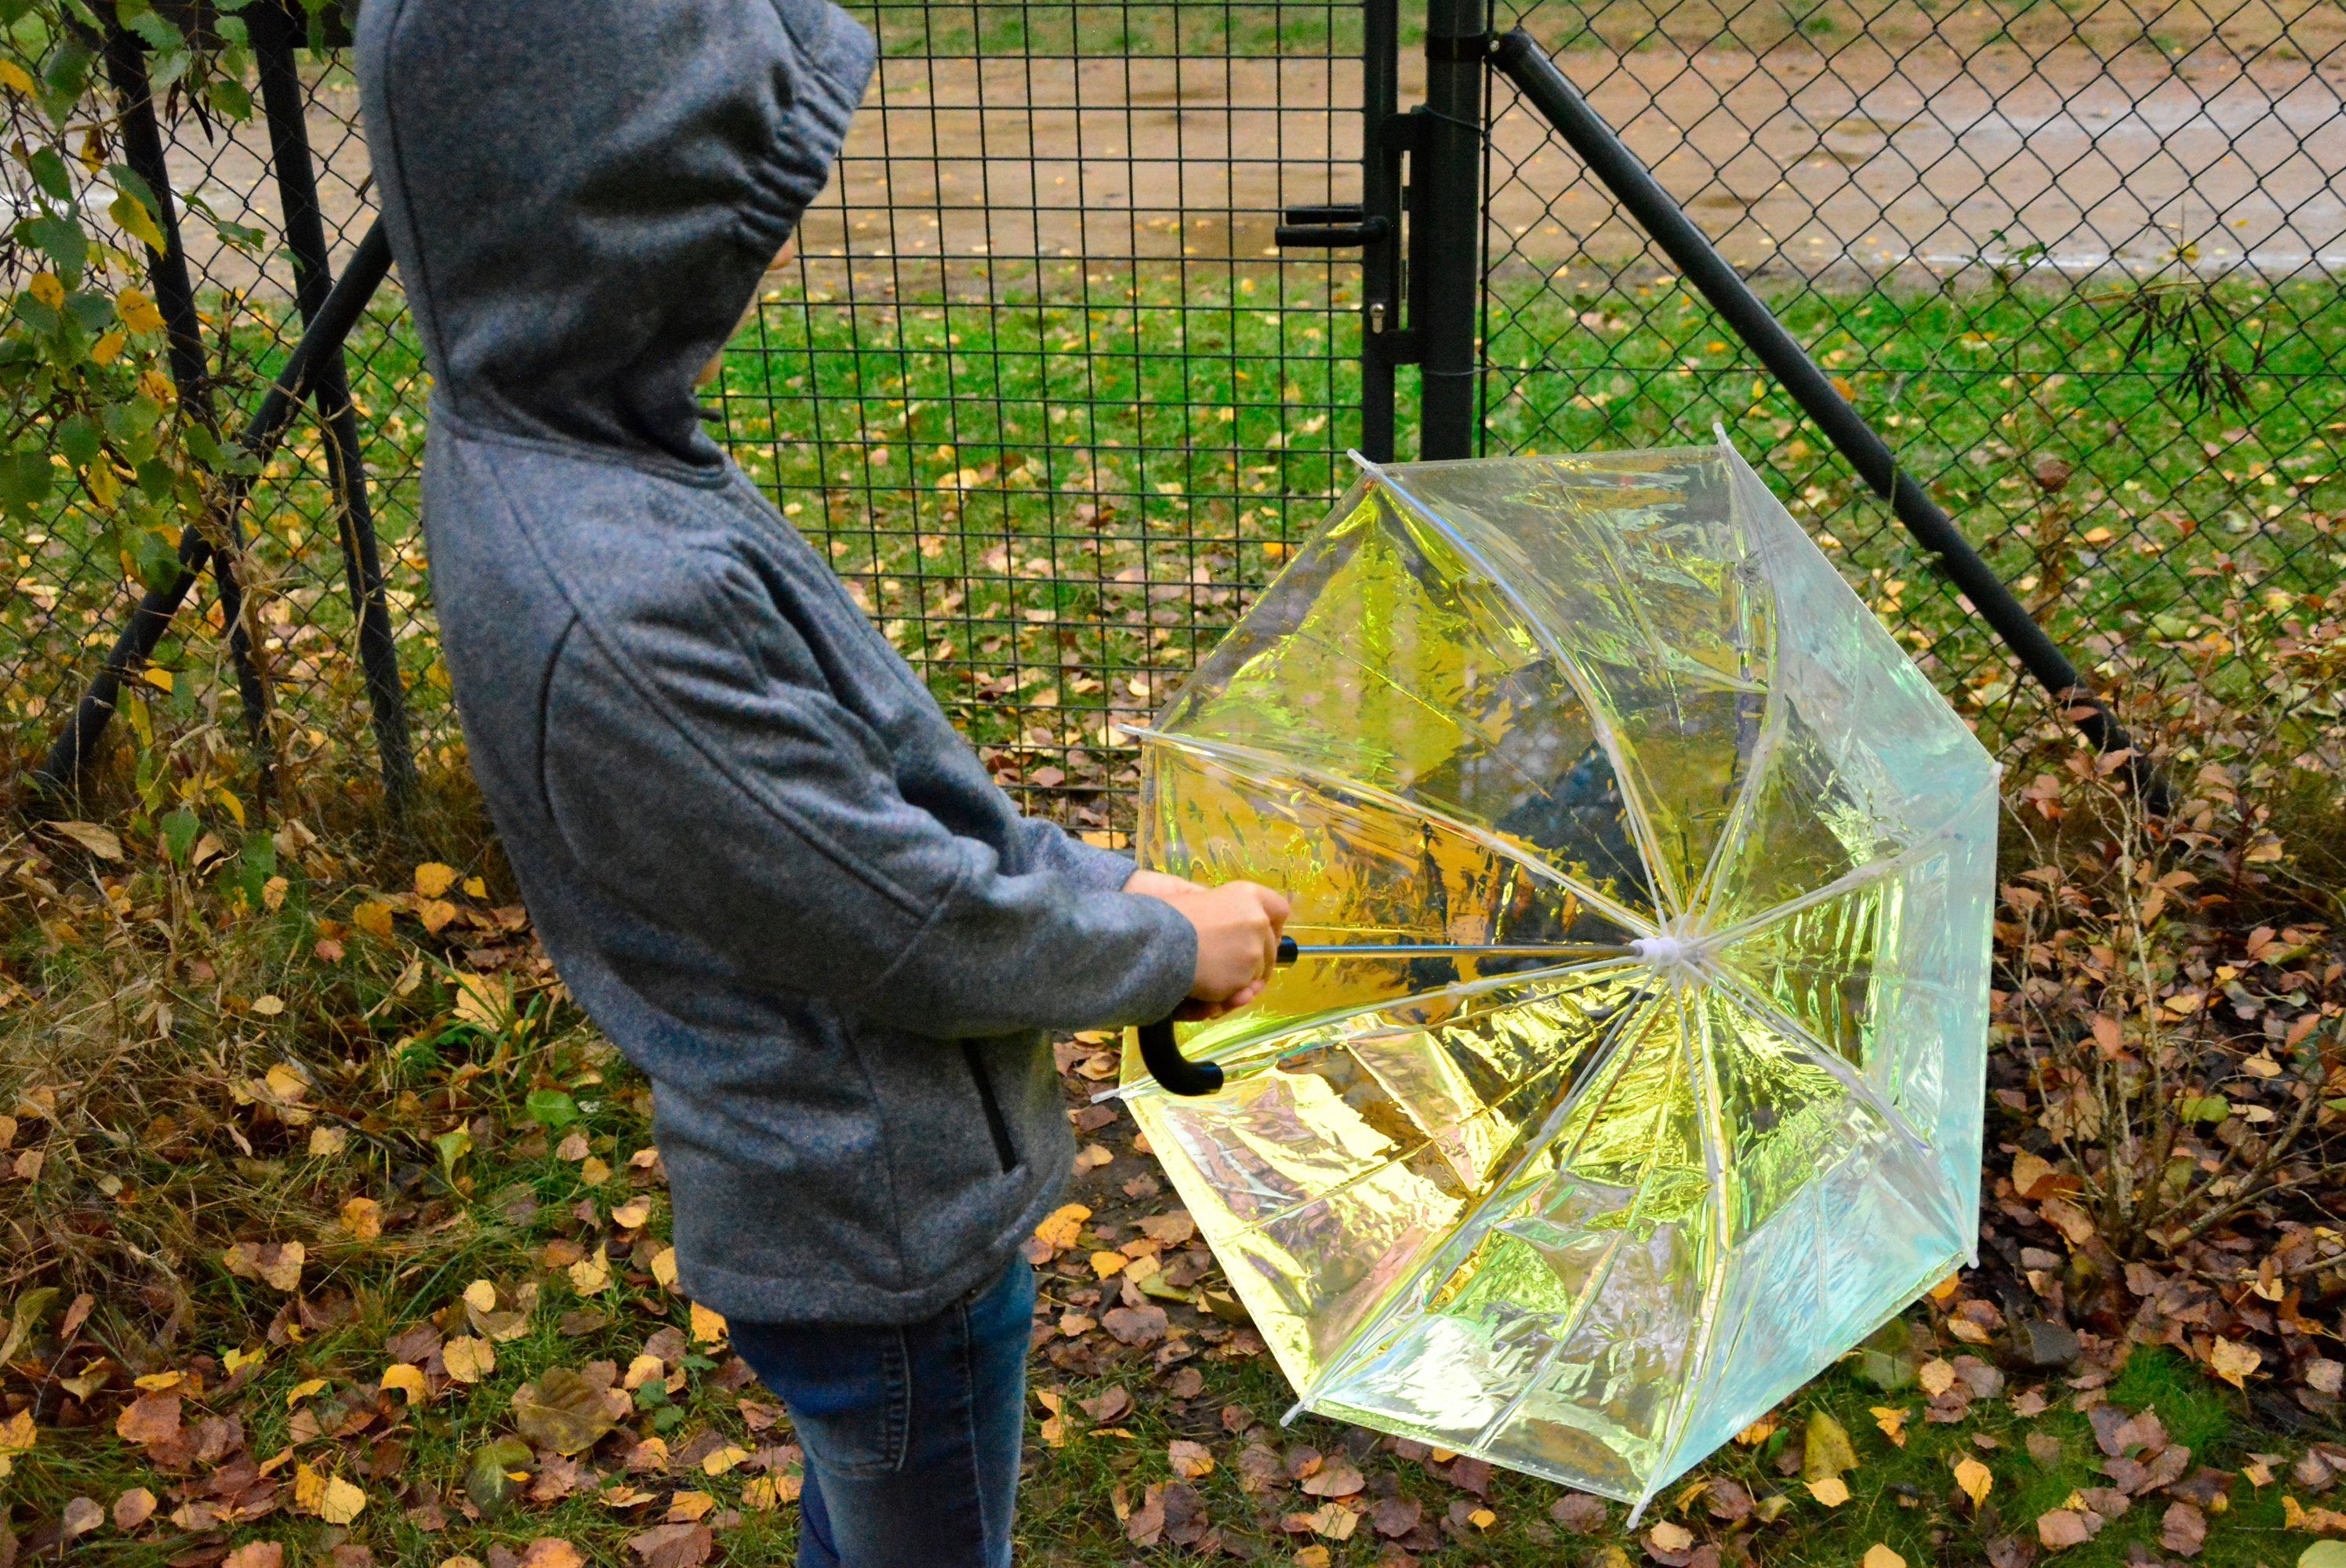 X-brella Stockregenschirm für transparenter schillernd Mädchen, bunt in Gold Glockenschirm Pastellfarben und